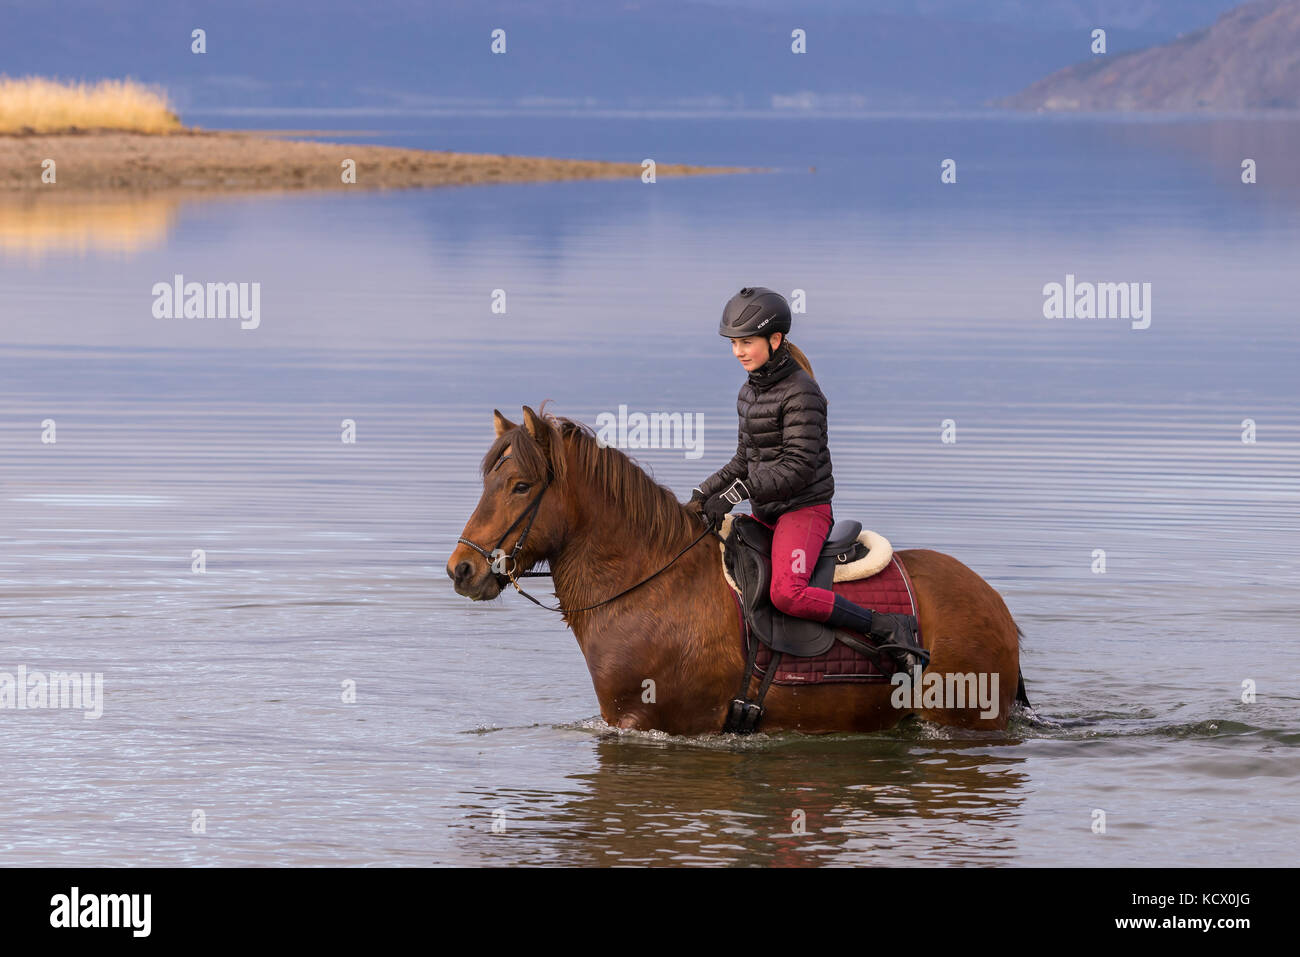 Chica adolescente en caballo de mar en una playa Foto de stock